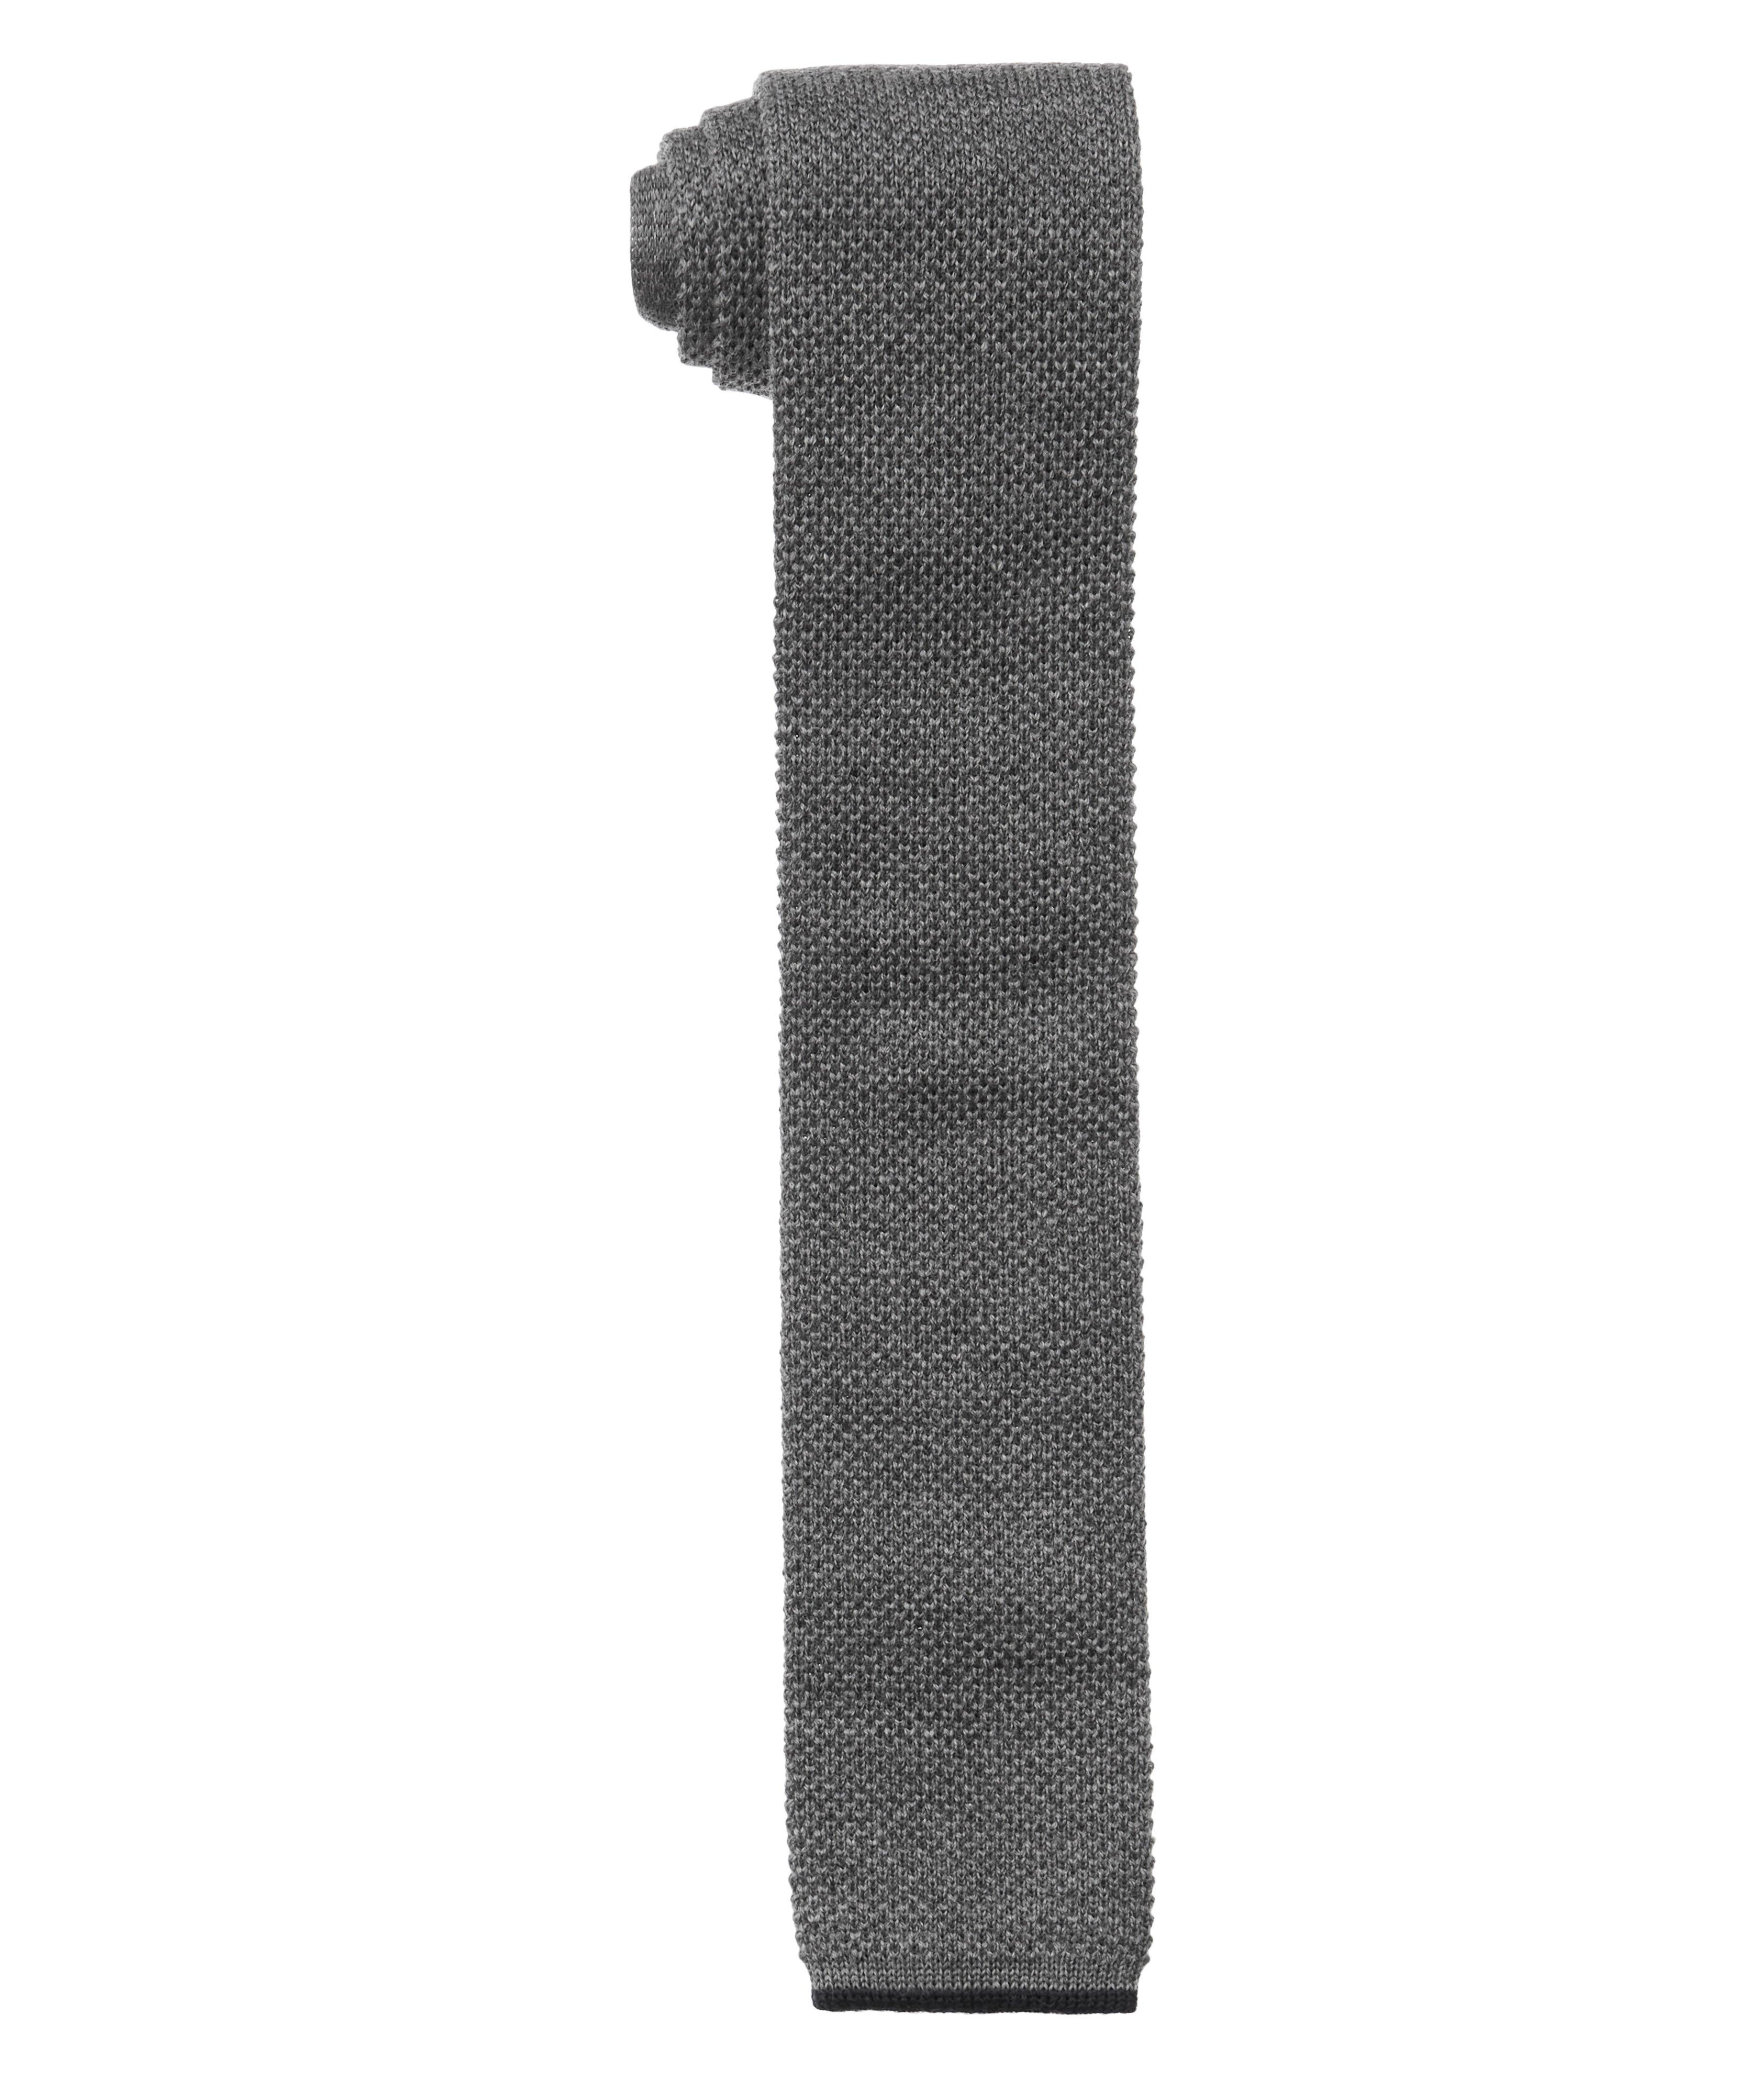 Cravate carrée en tricot de laine image 0